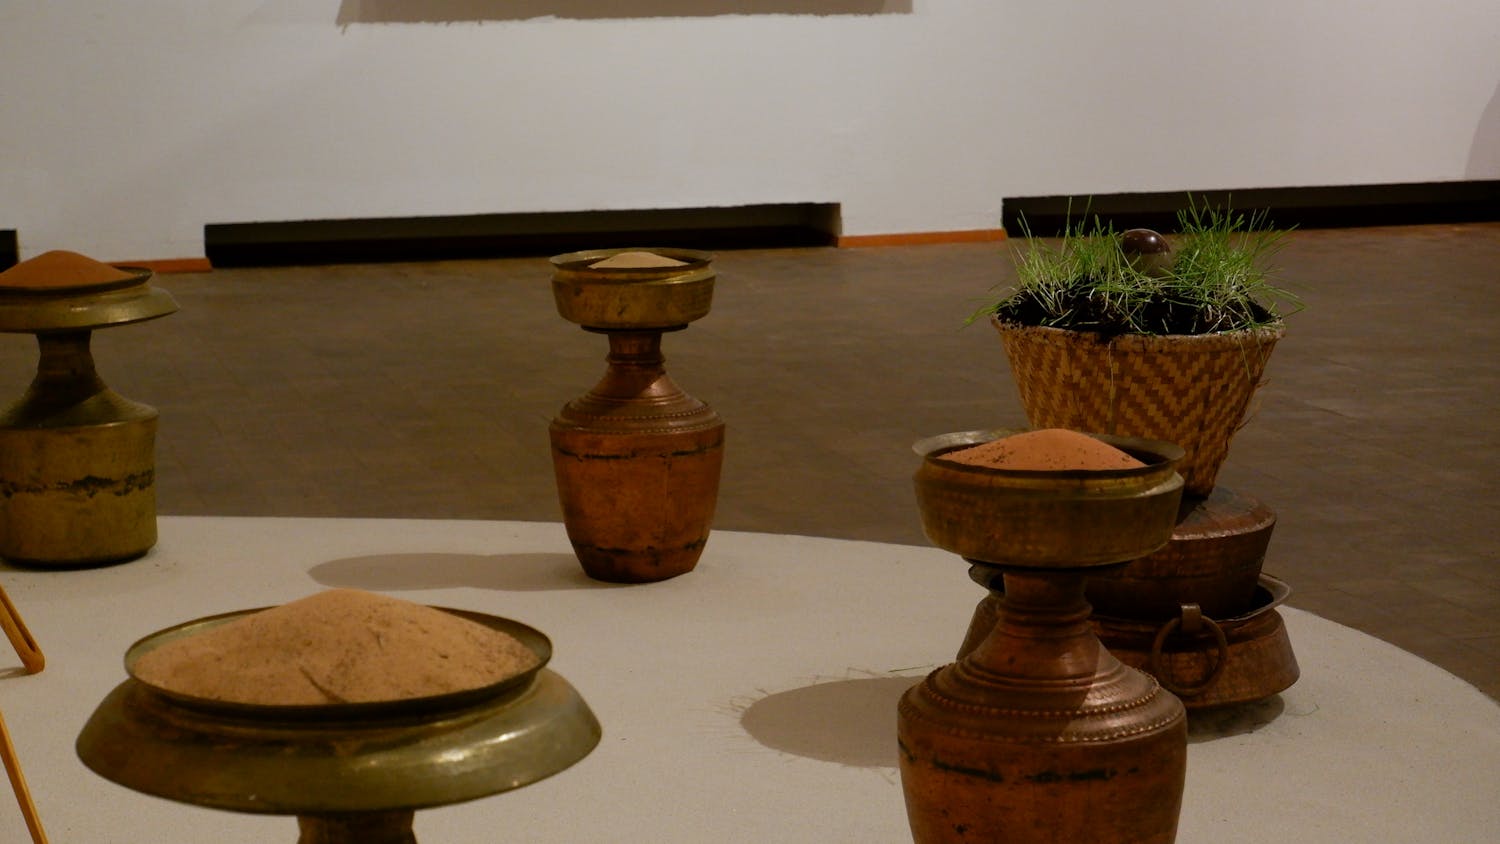 Jyoti Duwadi breaks down barriers at the Western Gallery